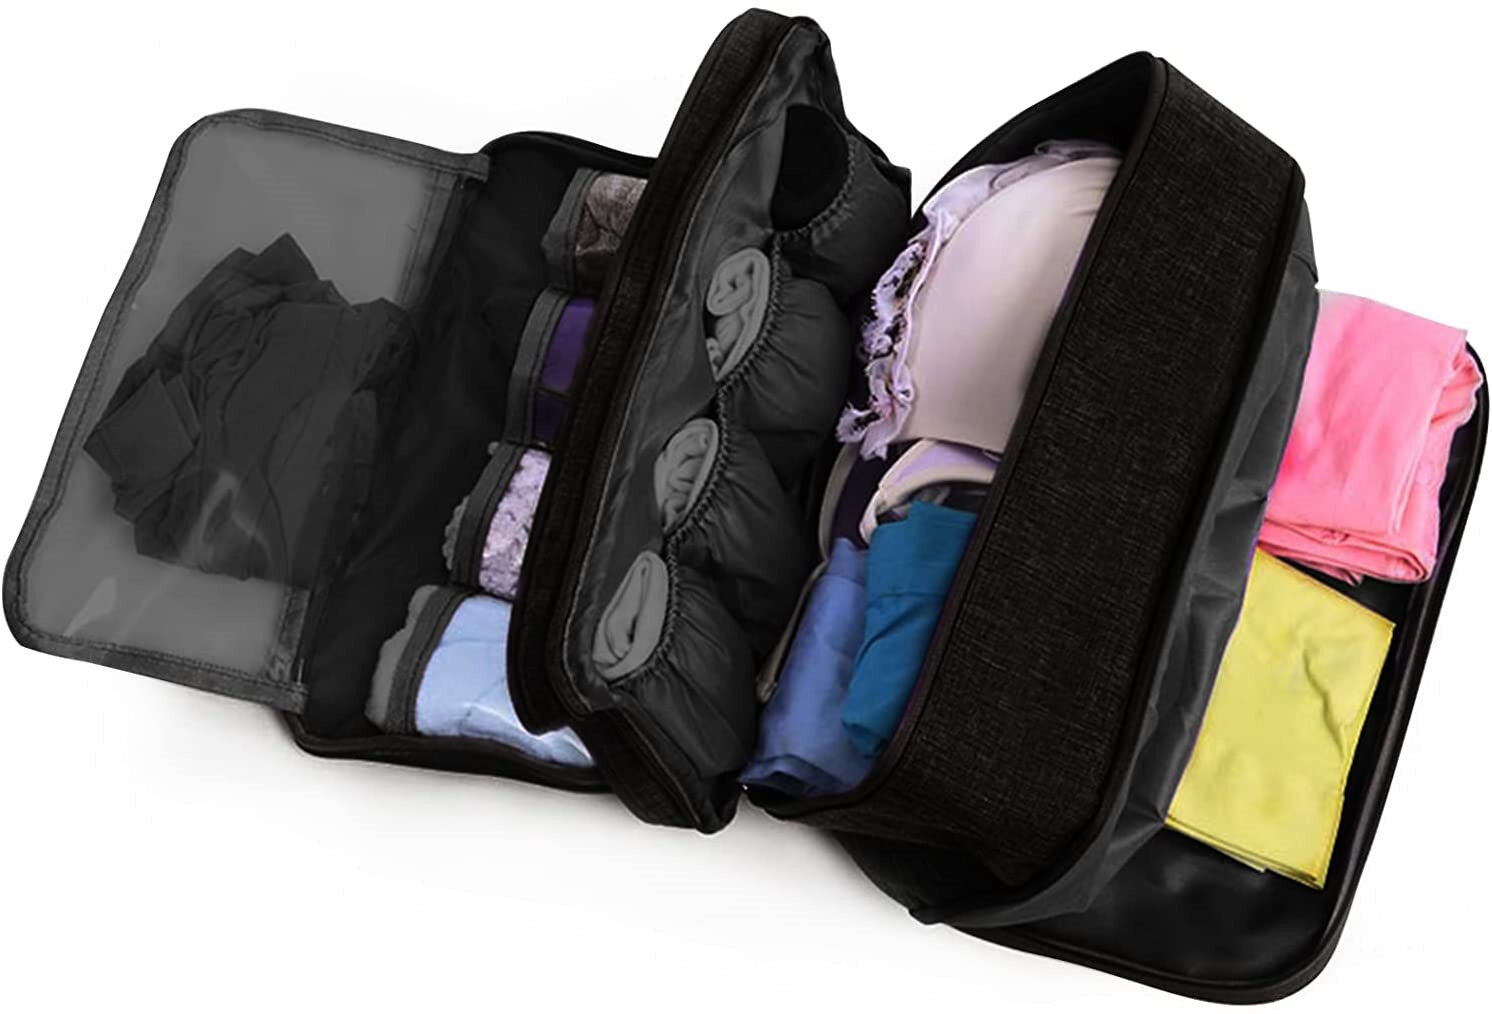 Sunglasses Cat Art Packing Cubes Travel Duffel Bag Handle Makeup Bag Large Capacity Portable Luggage Bag